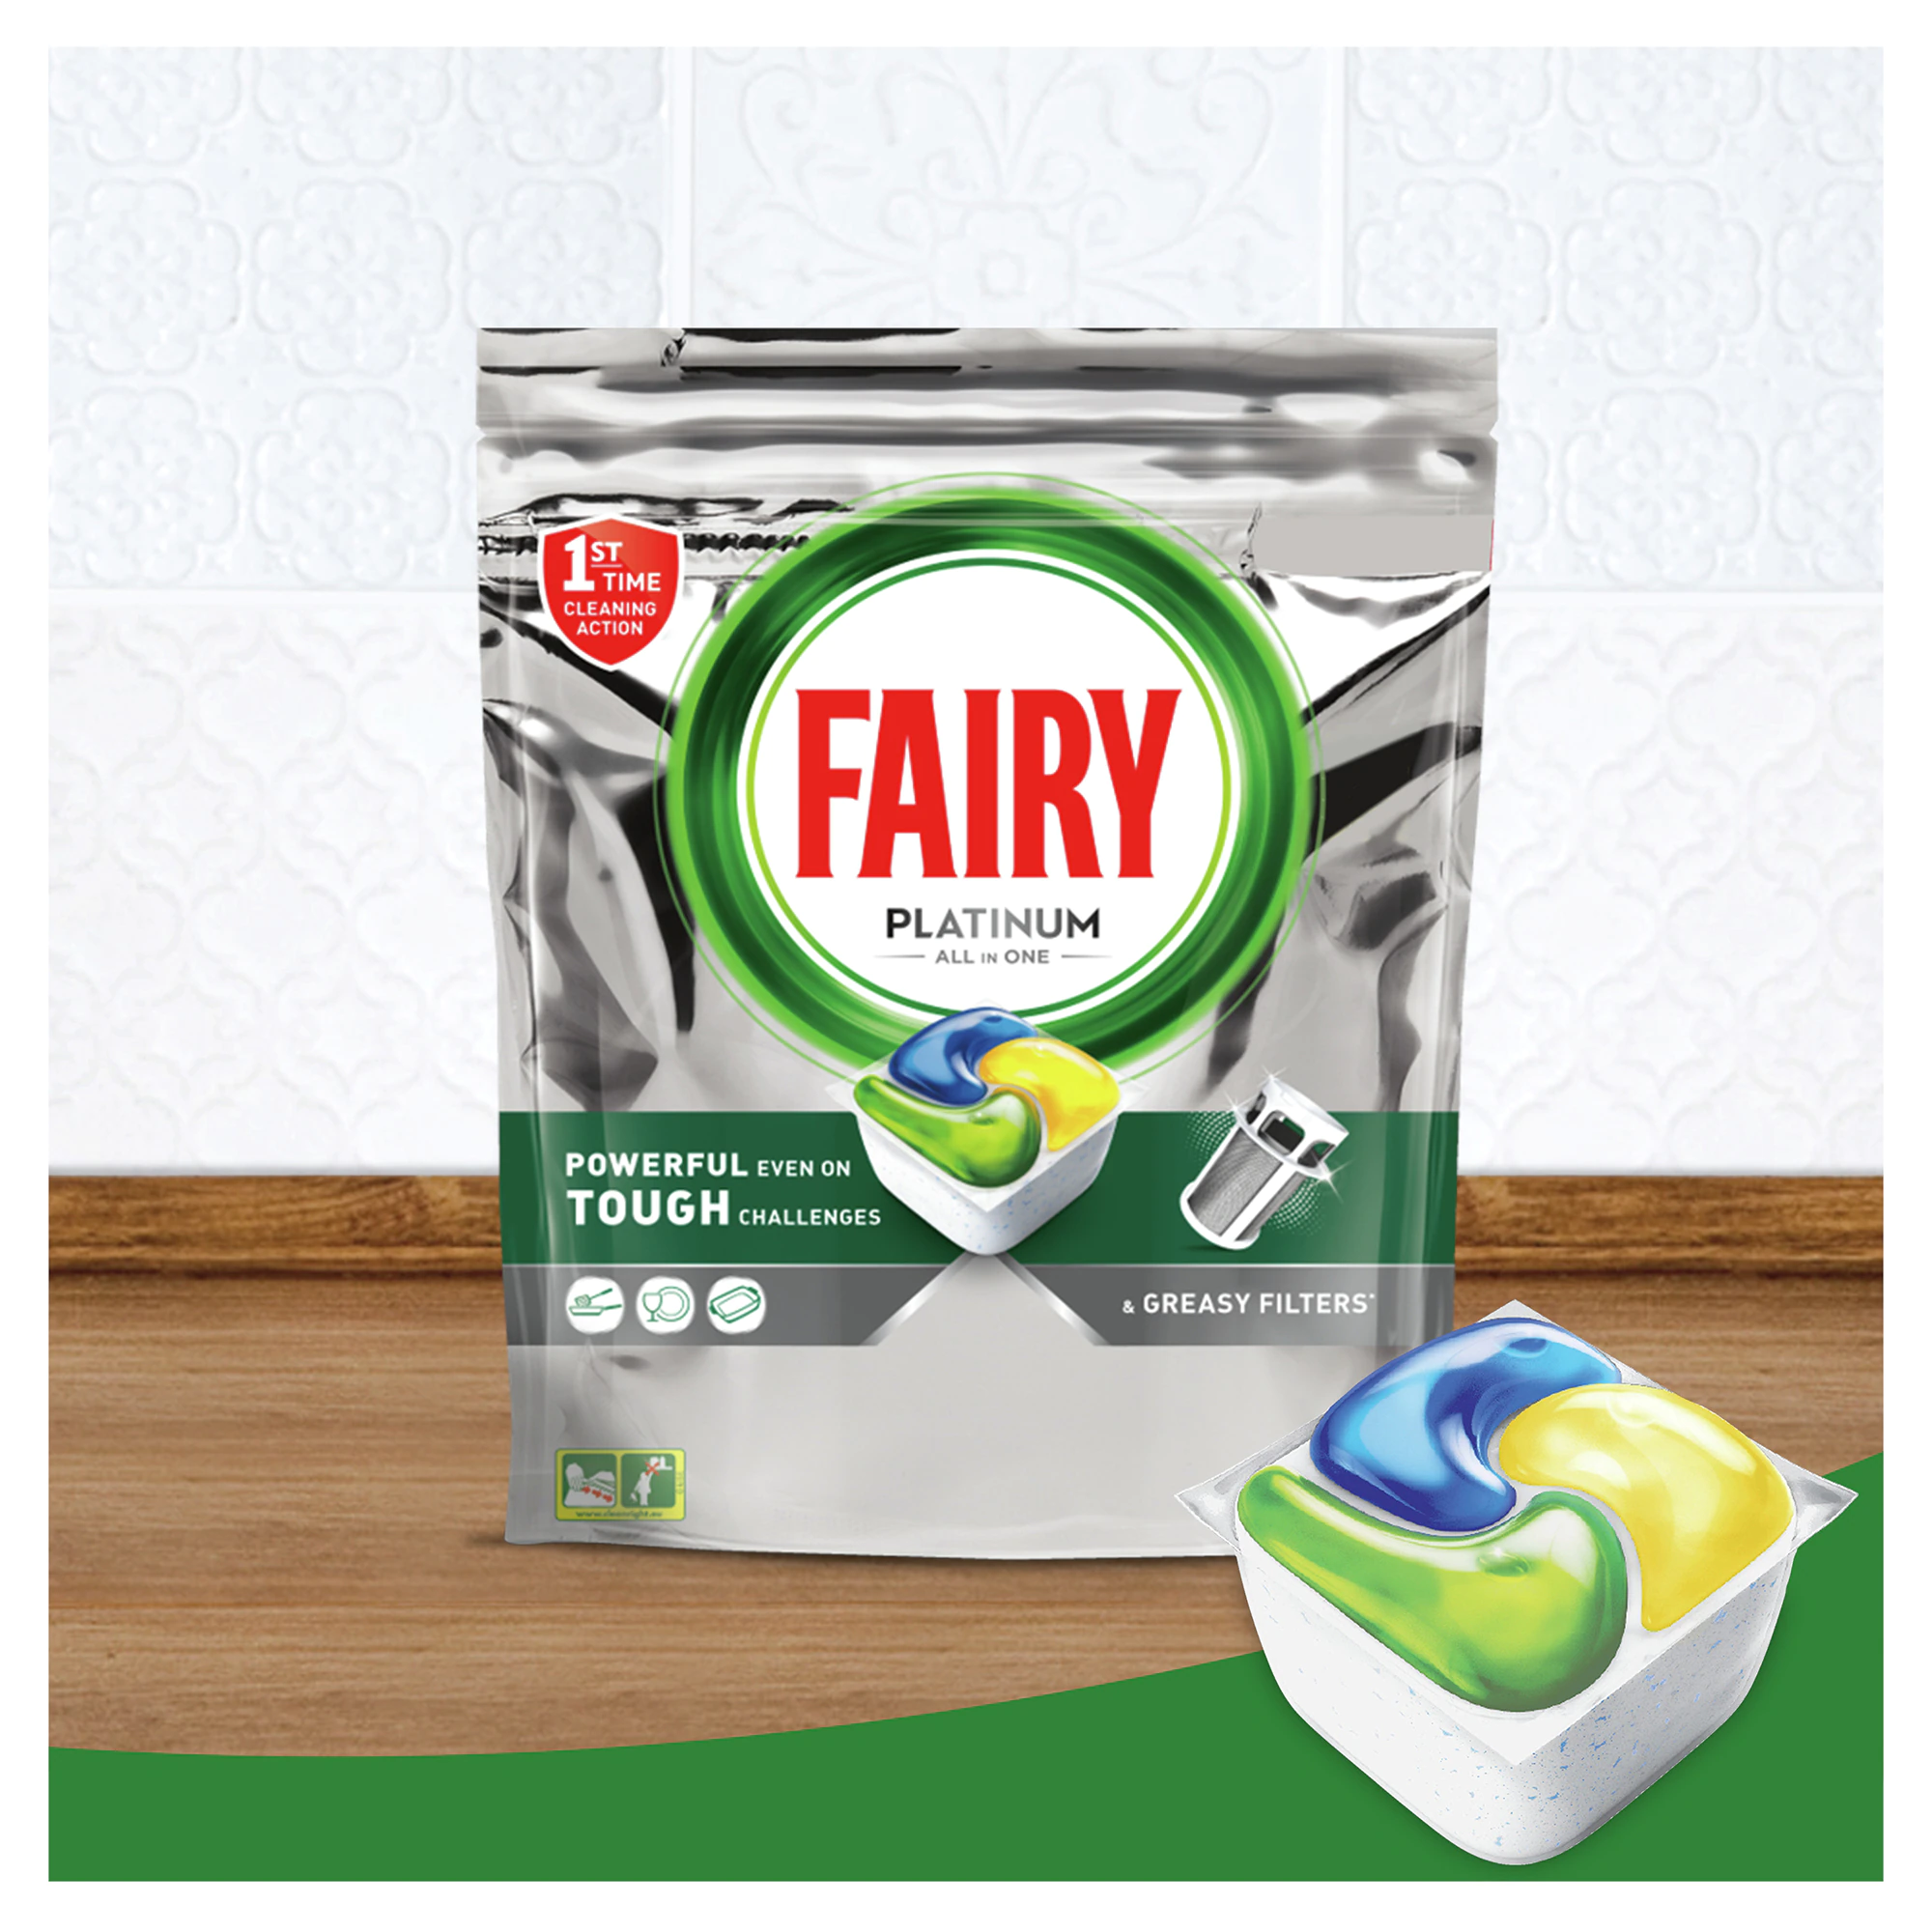 Pachet detergent pentru masina de spalat vase Fairy Platinum, 2 x 100 spalari [3]